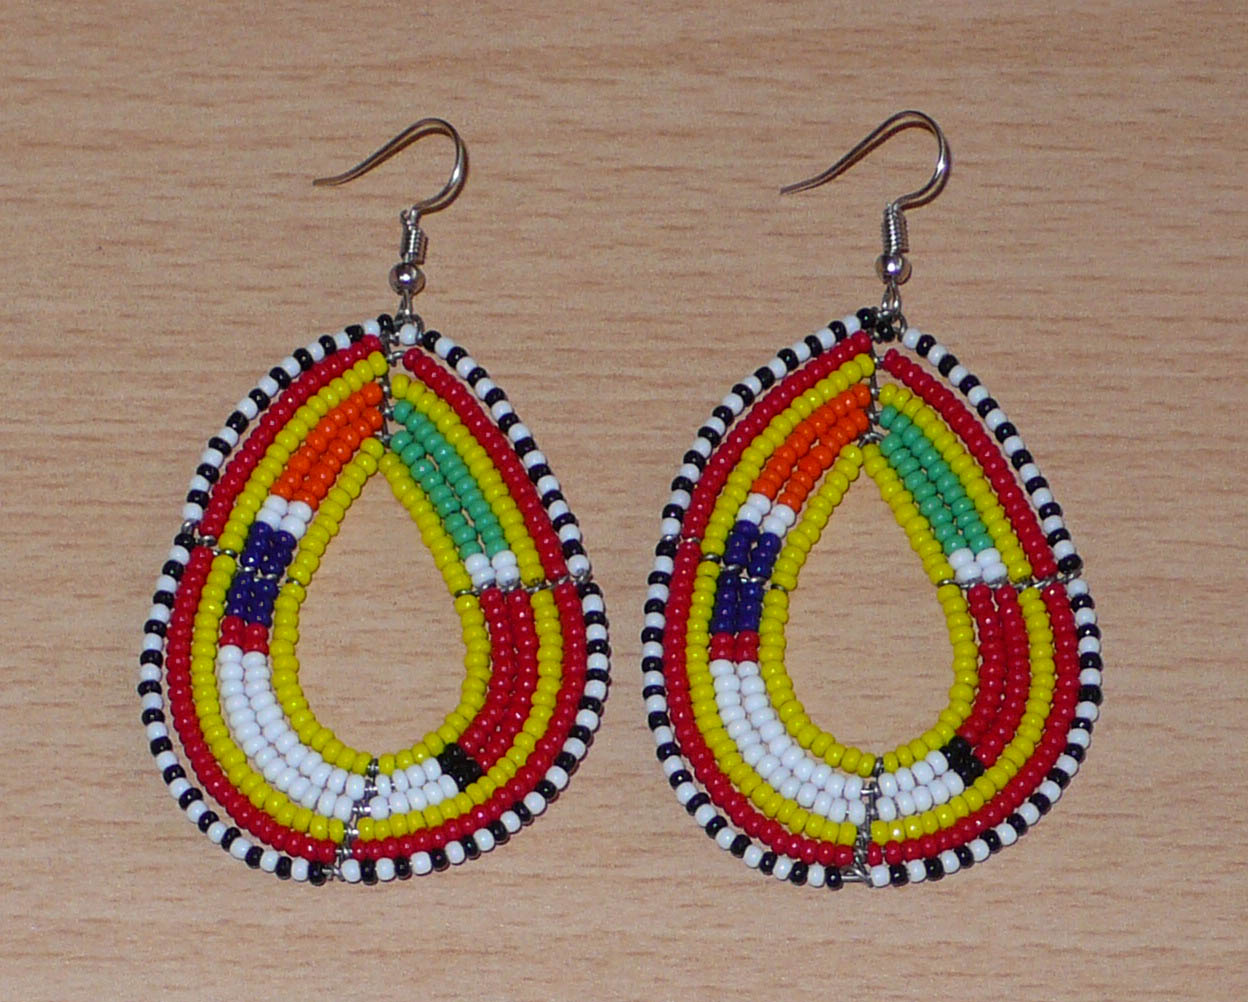 Boucles d'oreilles ethniques de tradition Massai en forme de gouttes faites de perles de rocaille jaunes et multicolores. Elles mesurent 8 cm de long et 4 cm de large et se portent avec des crochets en acier inoxydable sur des oreilles percées. Timeless Fineries